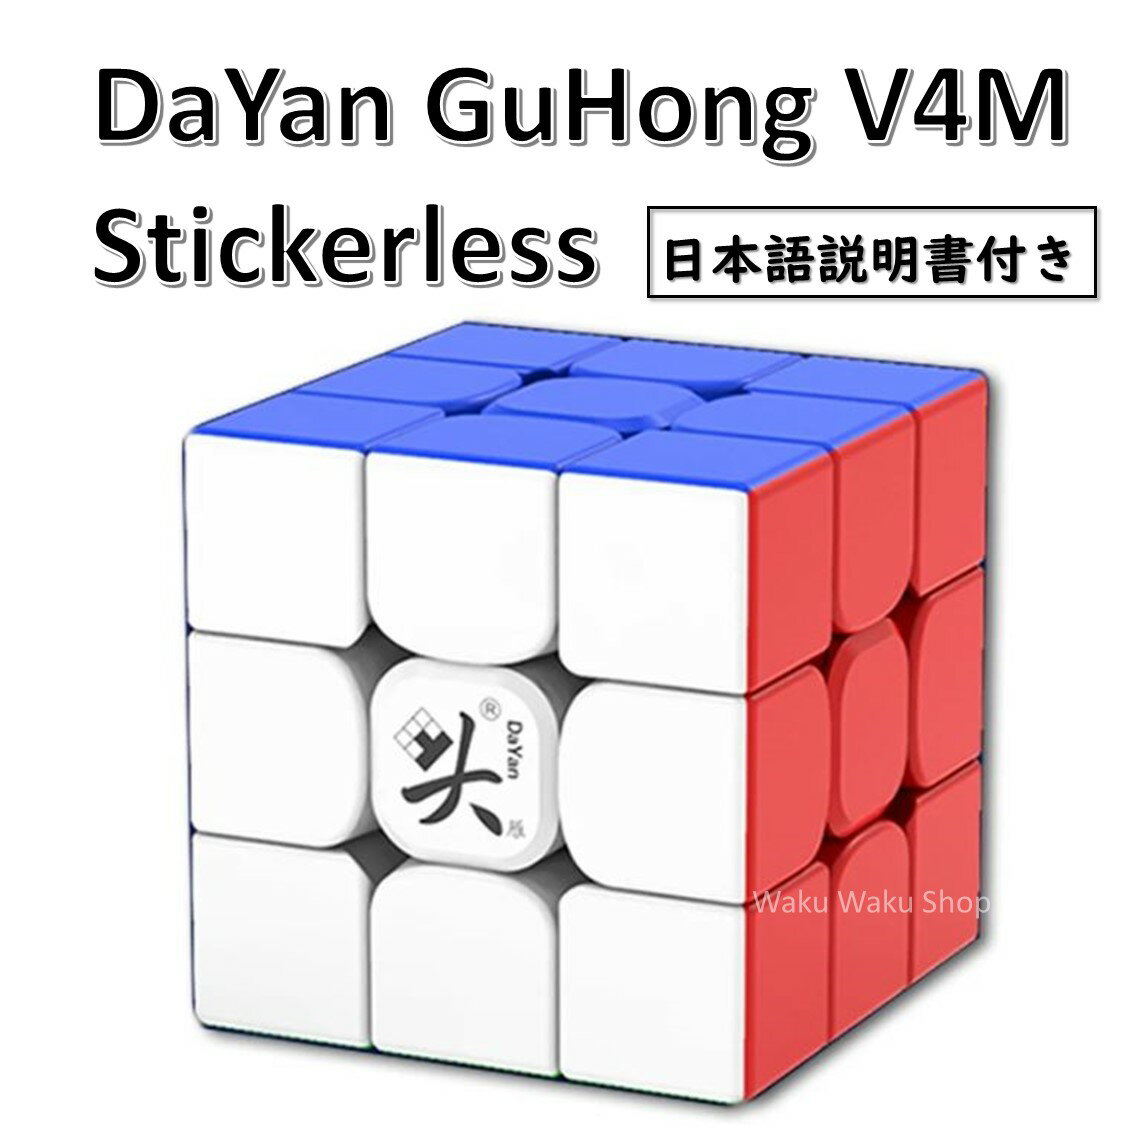 【日本語説明書付き】 【安心の保証付き】 【正規販売店】 DaYan GuHong V4M 磁石搭載 3x3x3キューブ ステッカーレス…